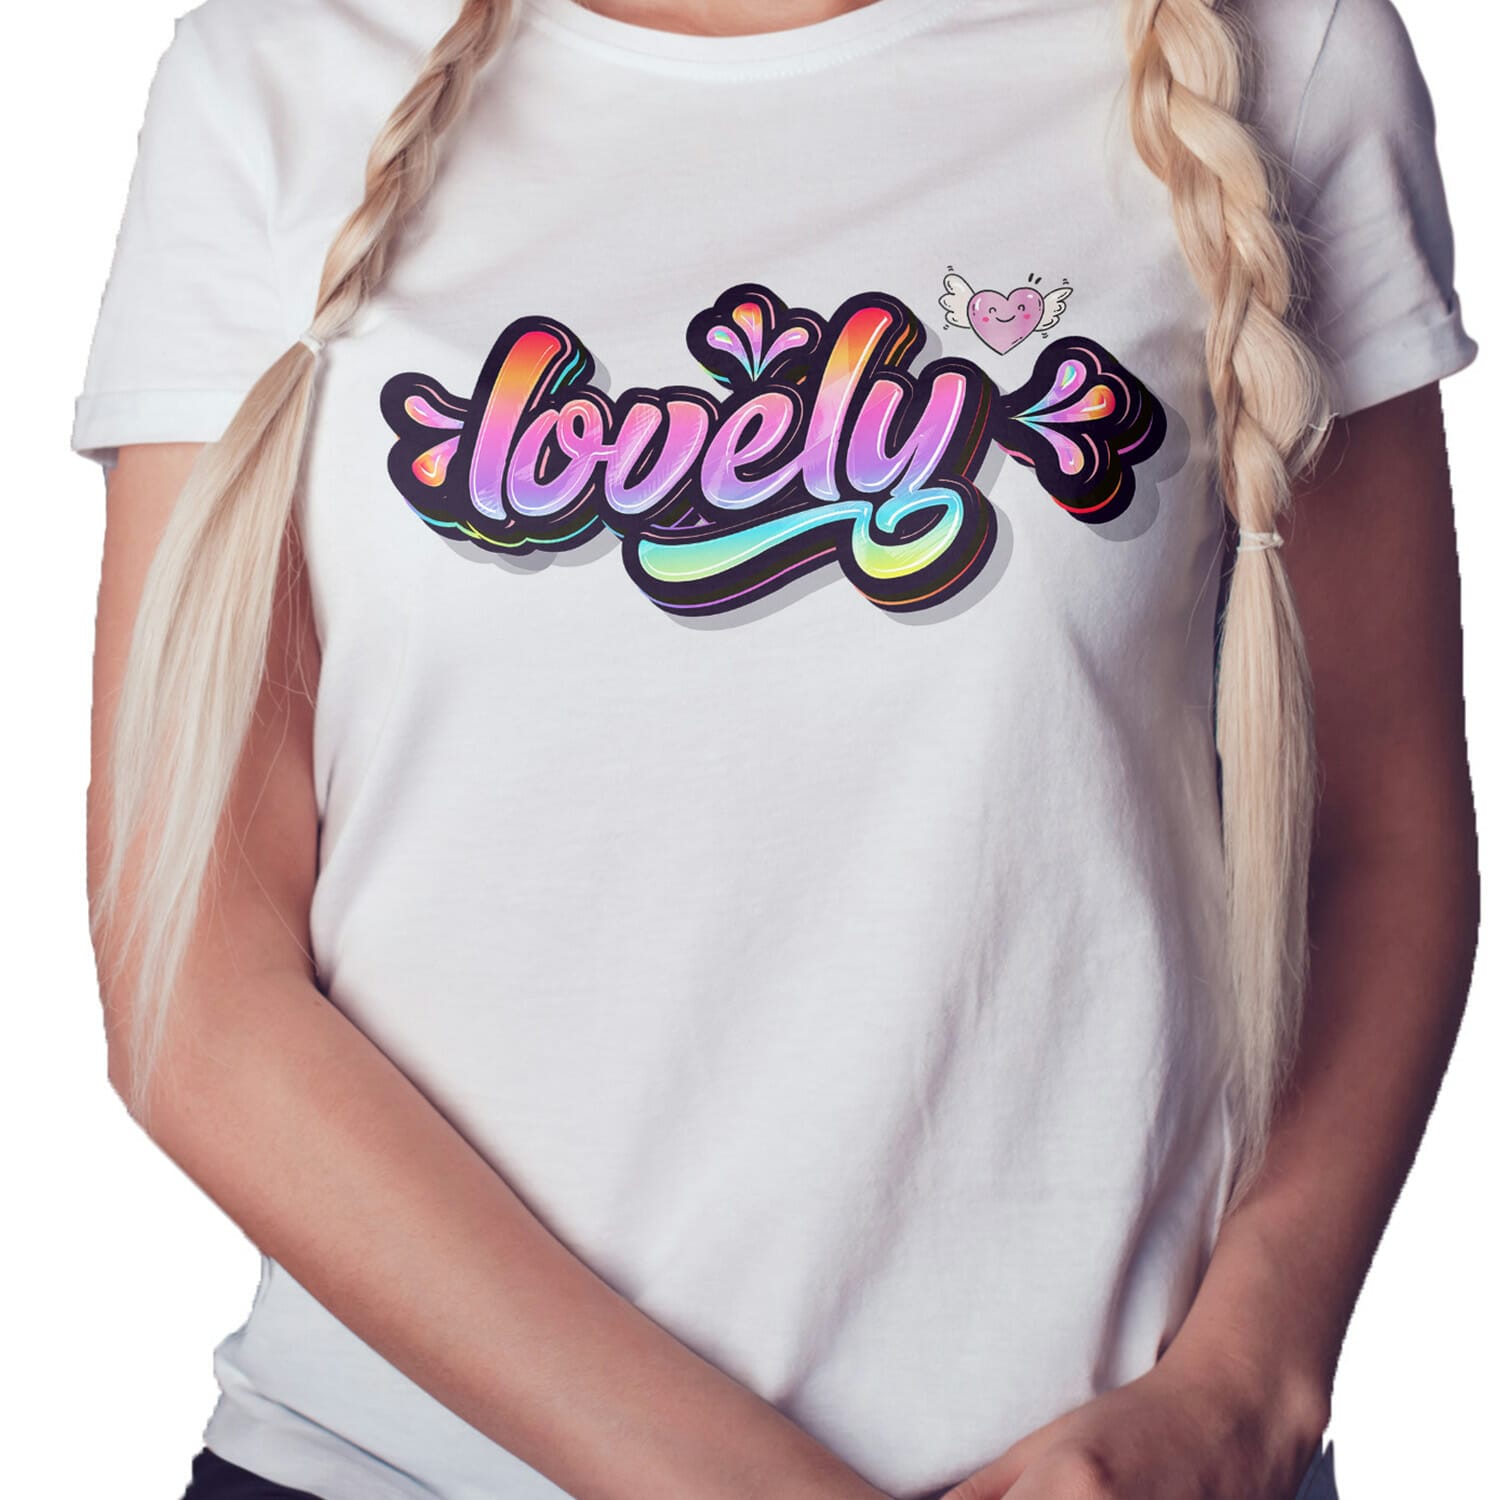 Lovely T-shirt Design For Women